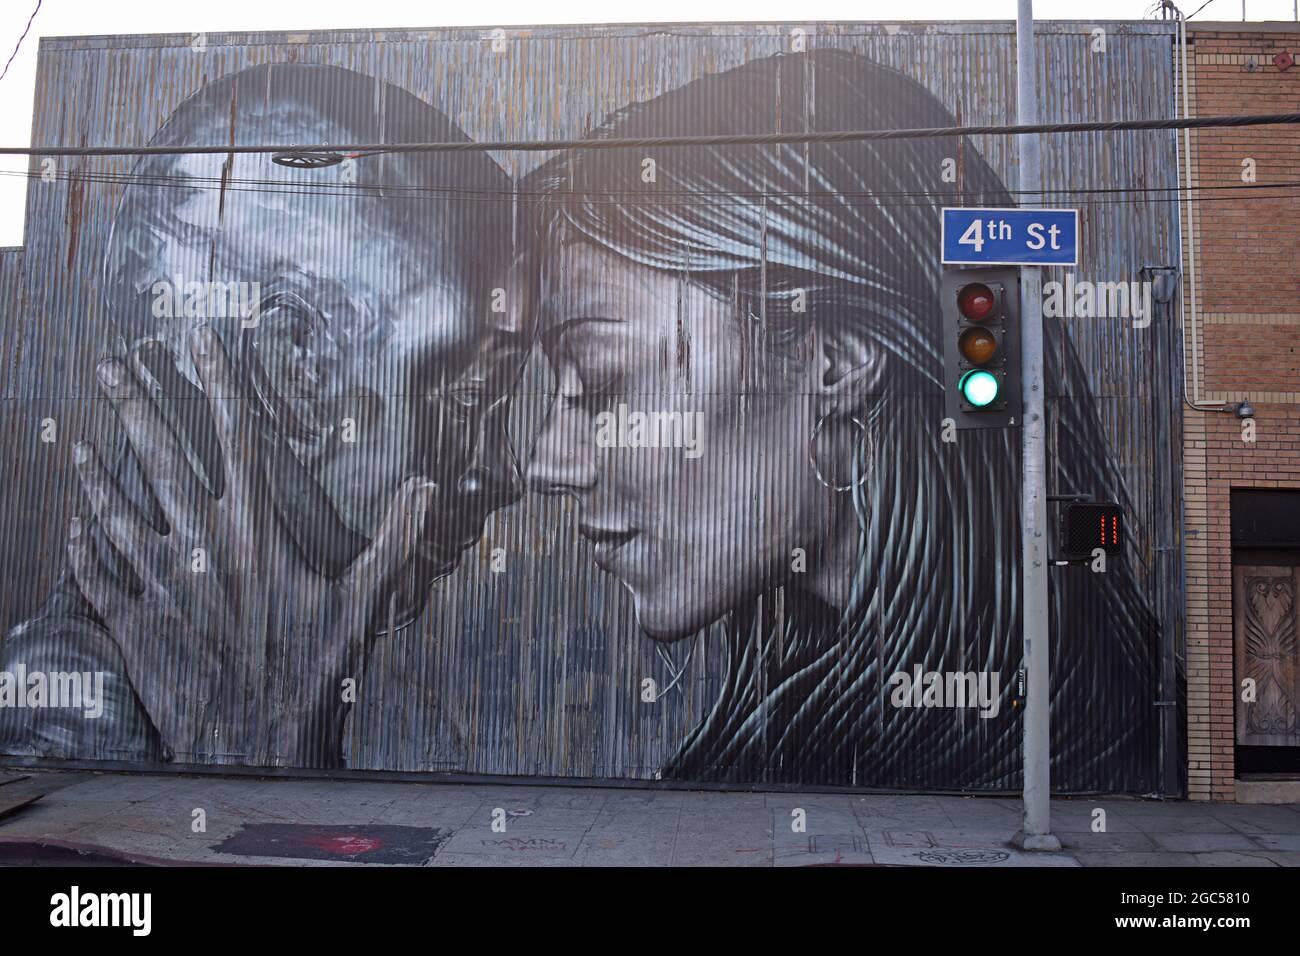 Fresque de Christina Angelina.Le quartier des arts.Centre-ville de Los Angeles, Californie, États-Unis Banque D'Images